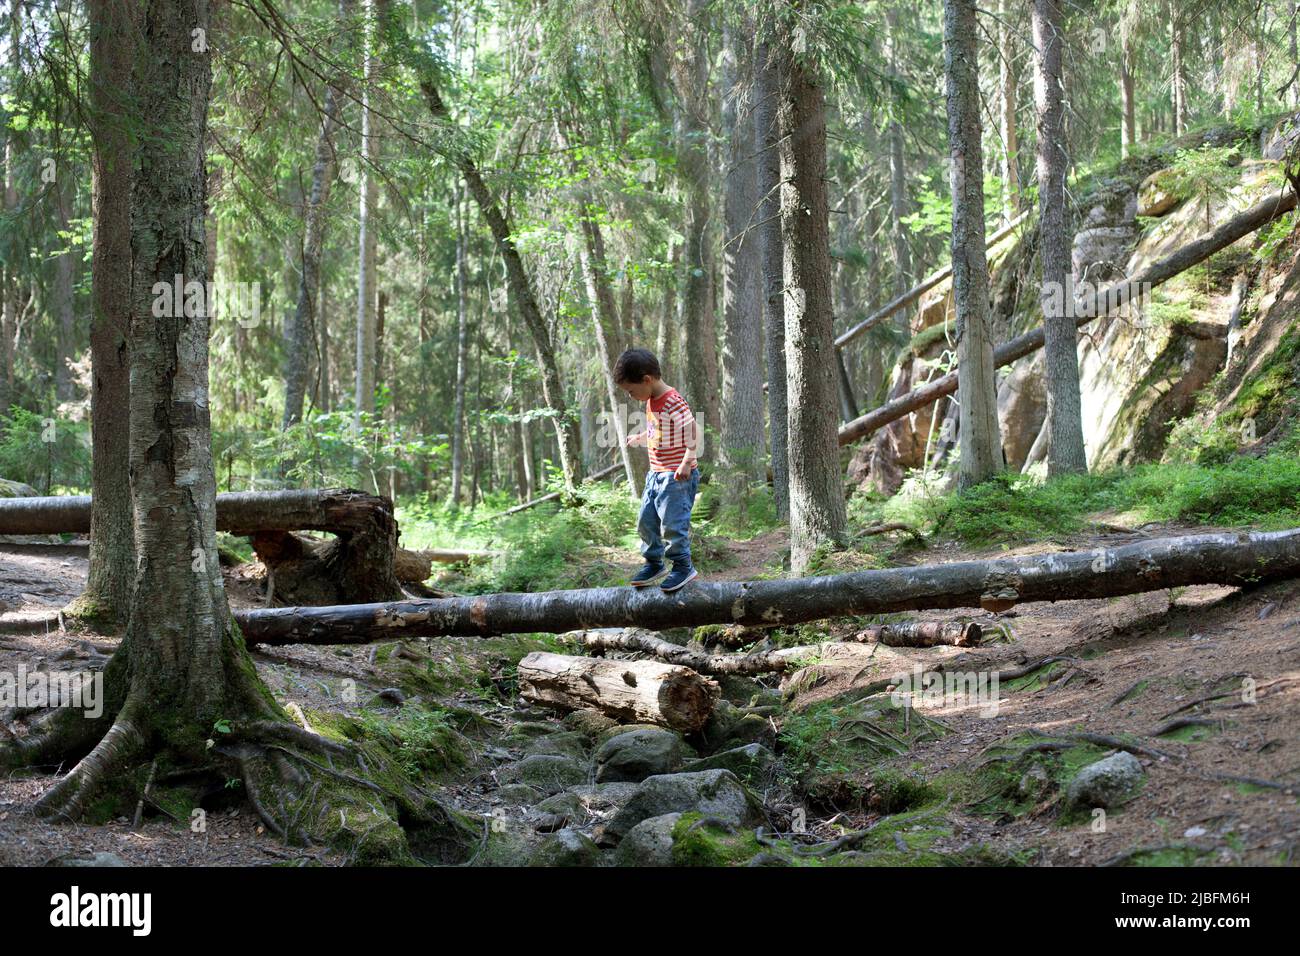 Boy walking on fallen tree in forest Stock Photo